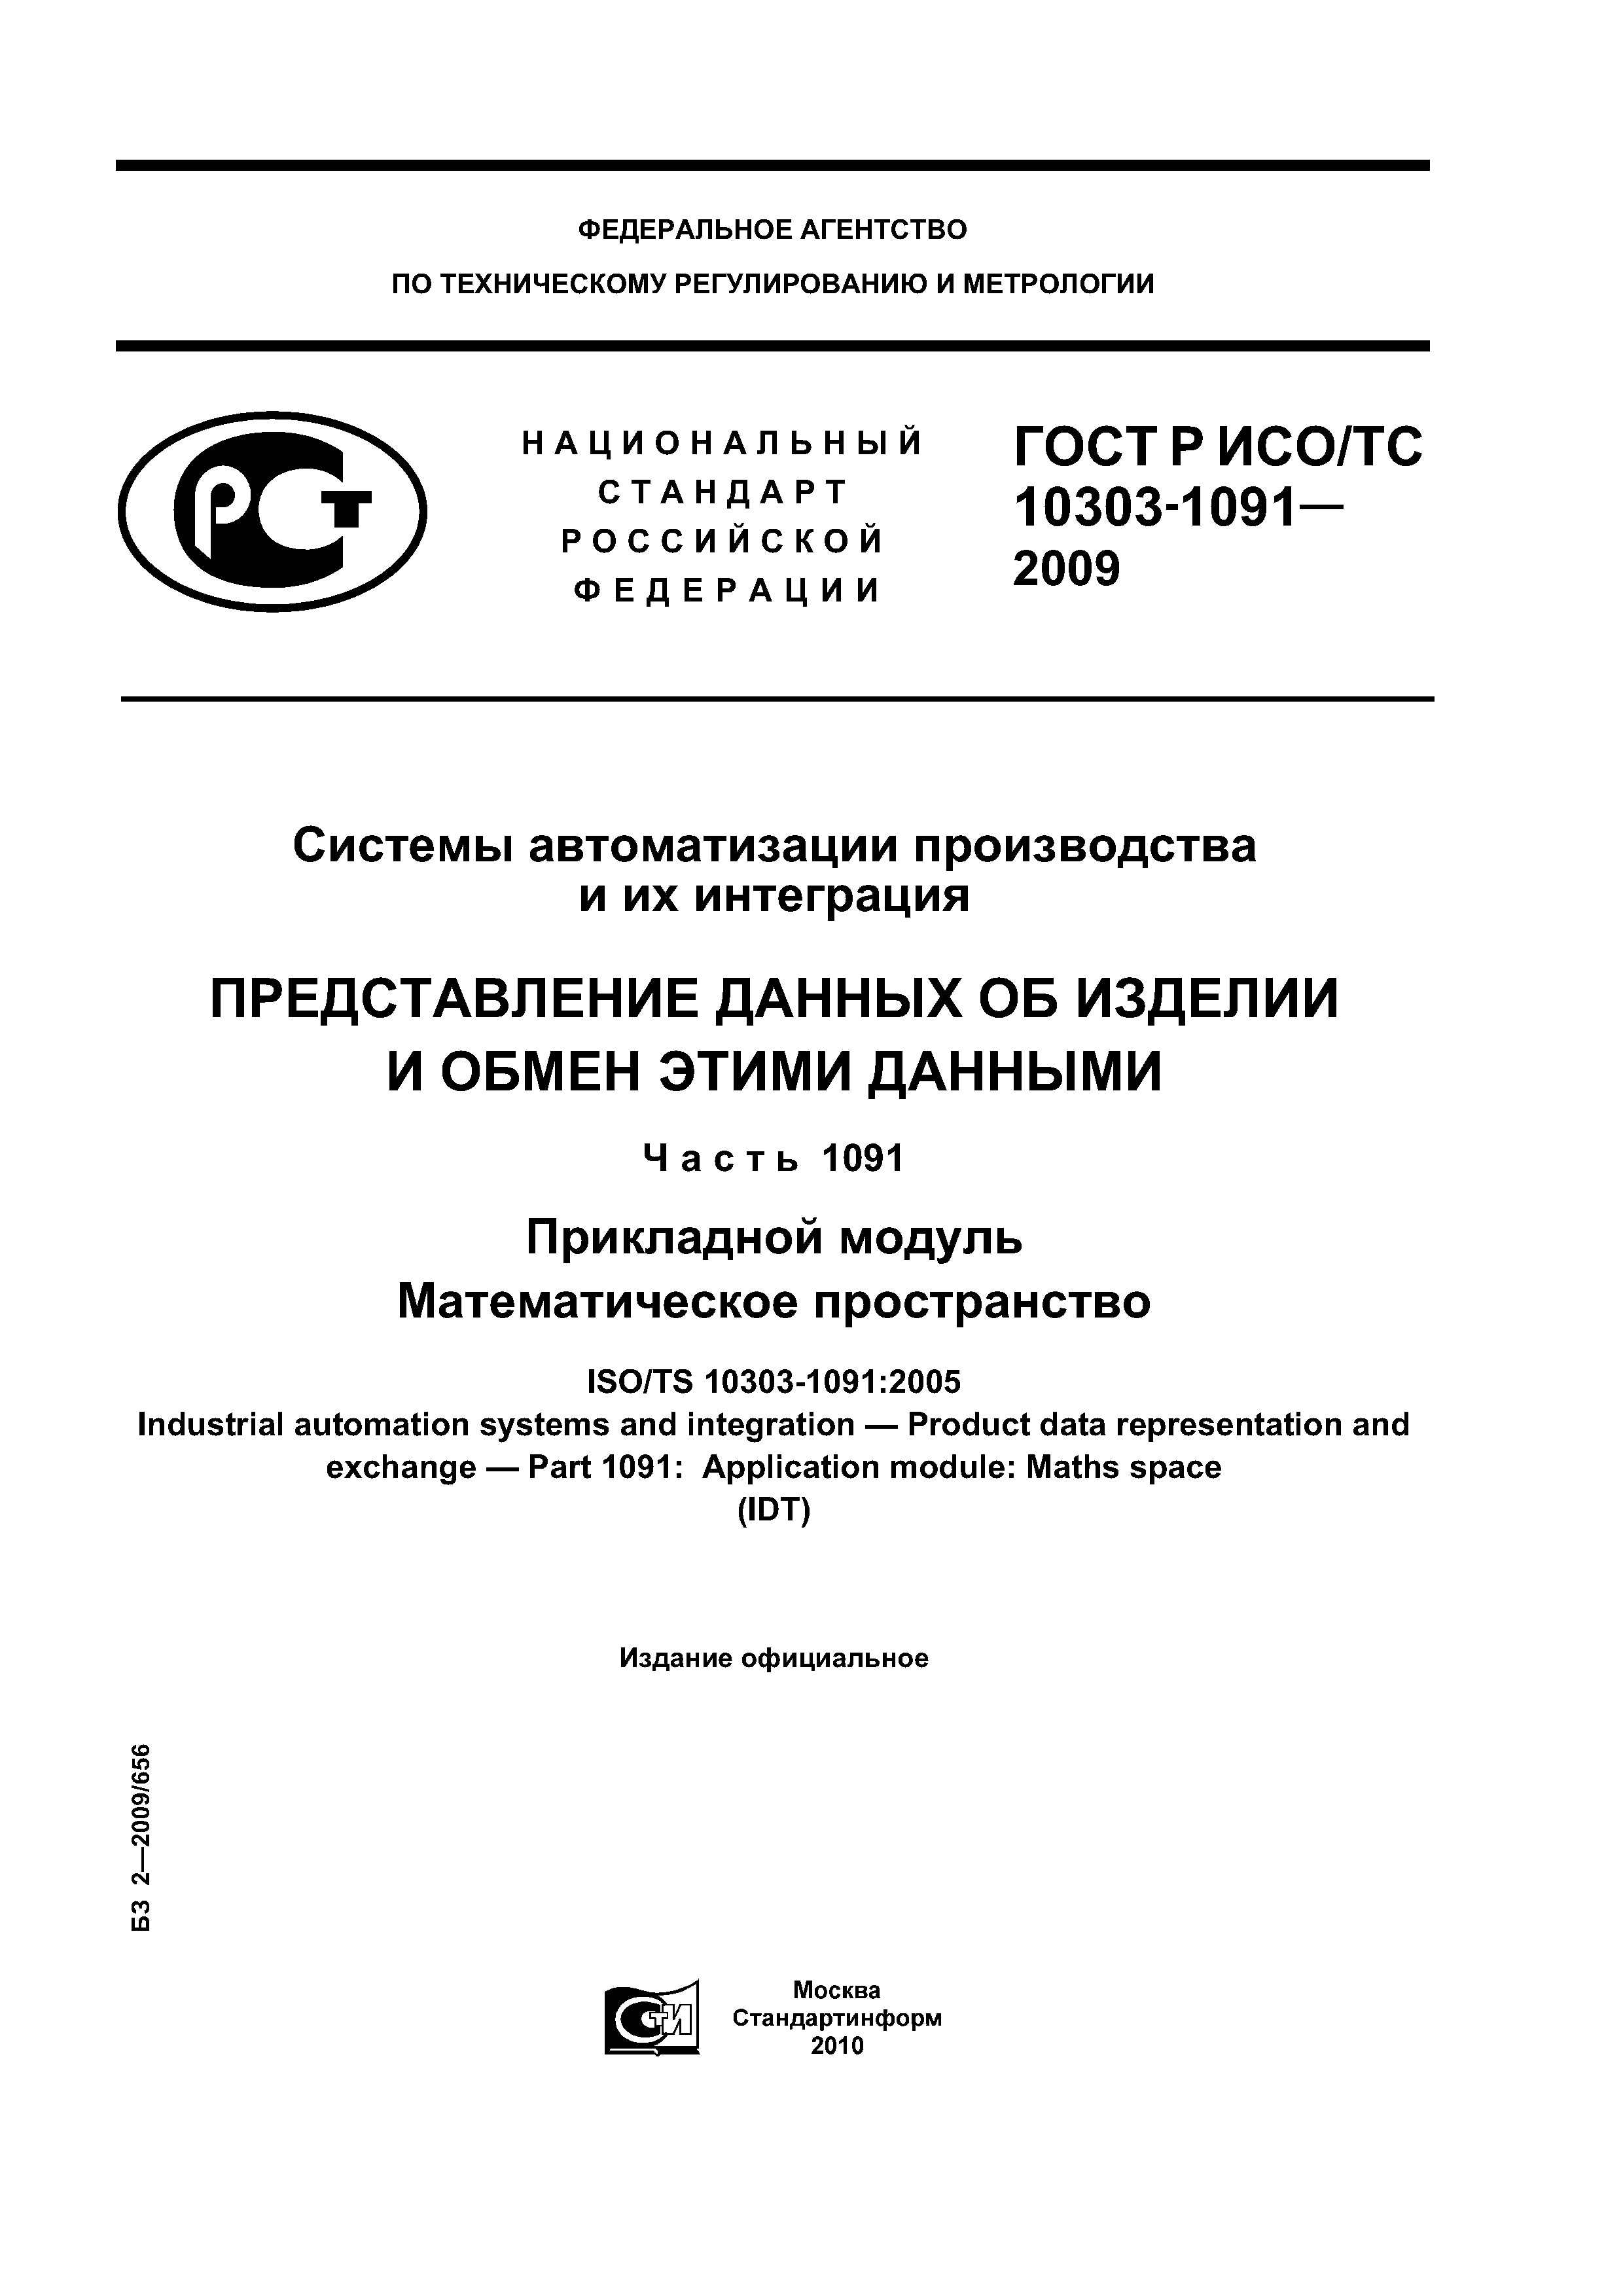 ГОСТ Р ИСО/ТС 10303-1091-2009